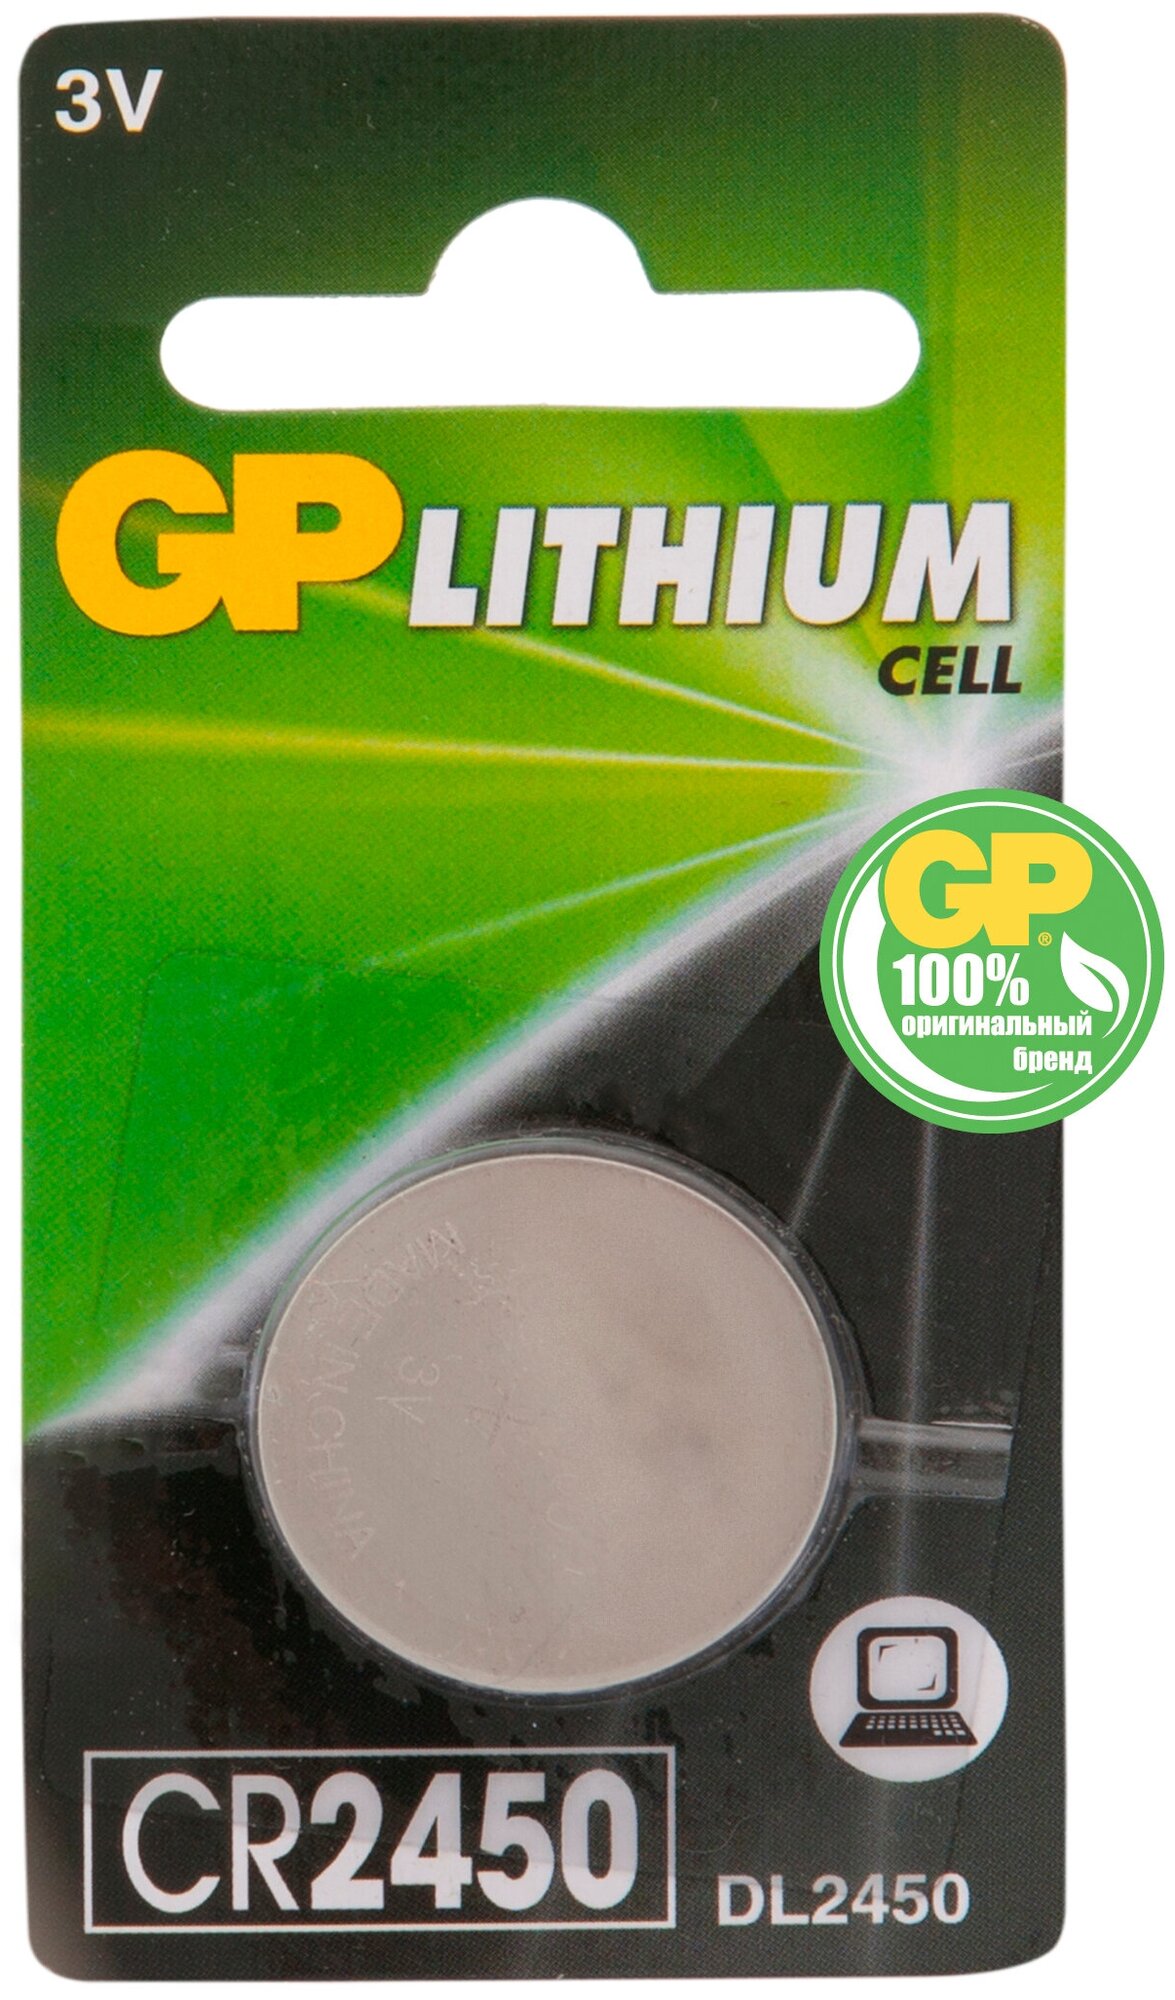 Батарея GP Lithium CR2450 (1шт) .